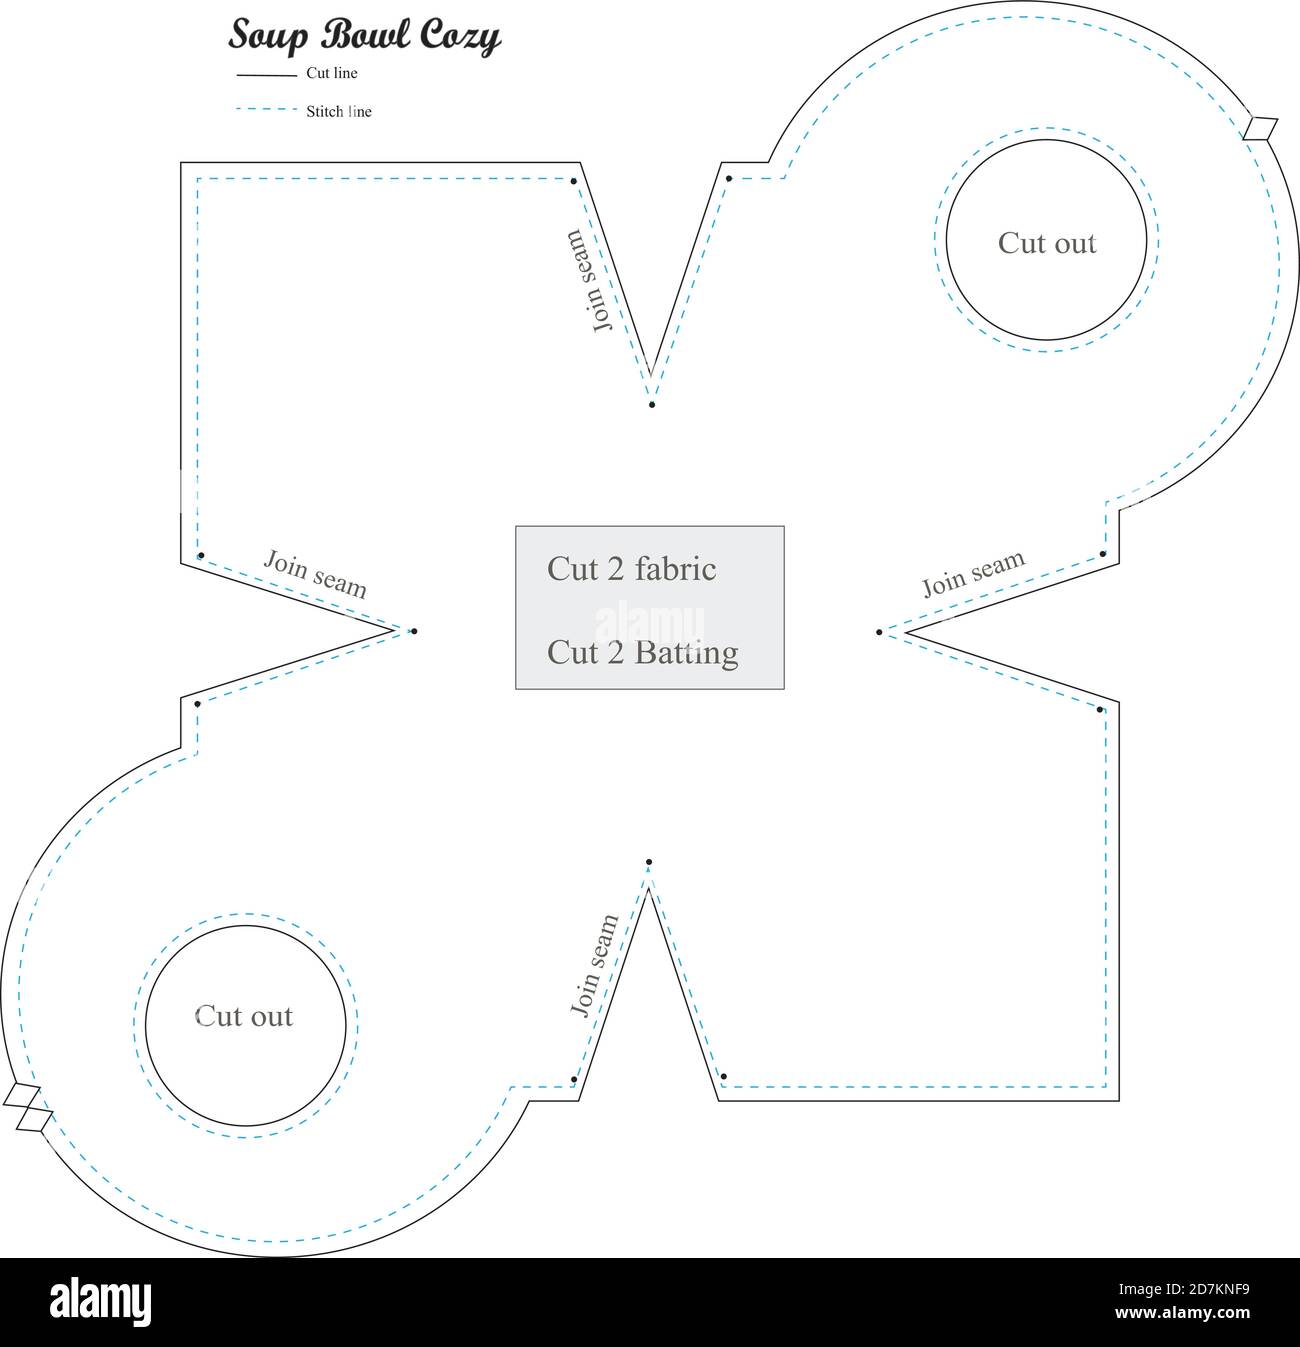 Bowl Cozy Pattern - Soup Bowl Cozy Pattern , FREE PDF Template in